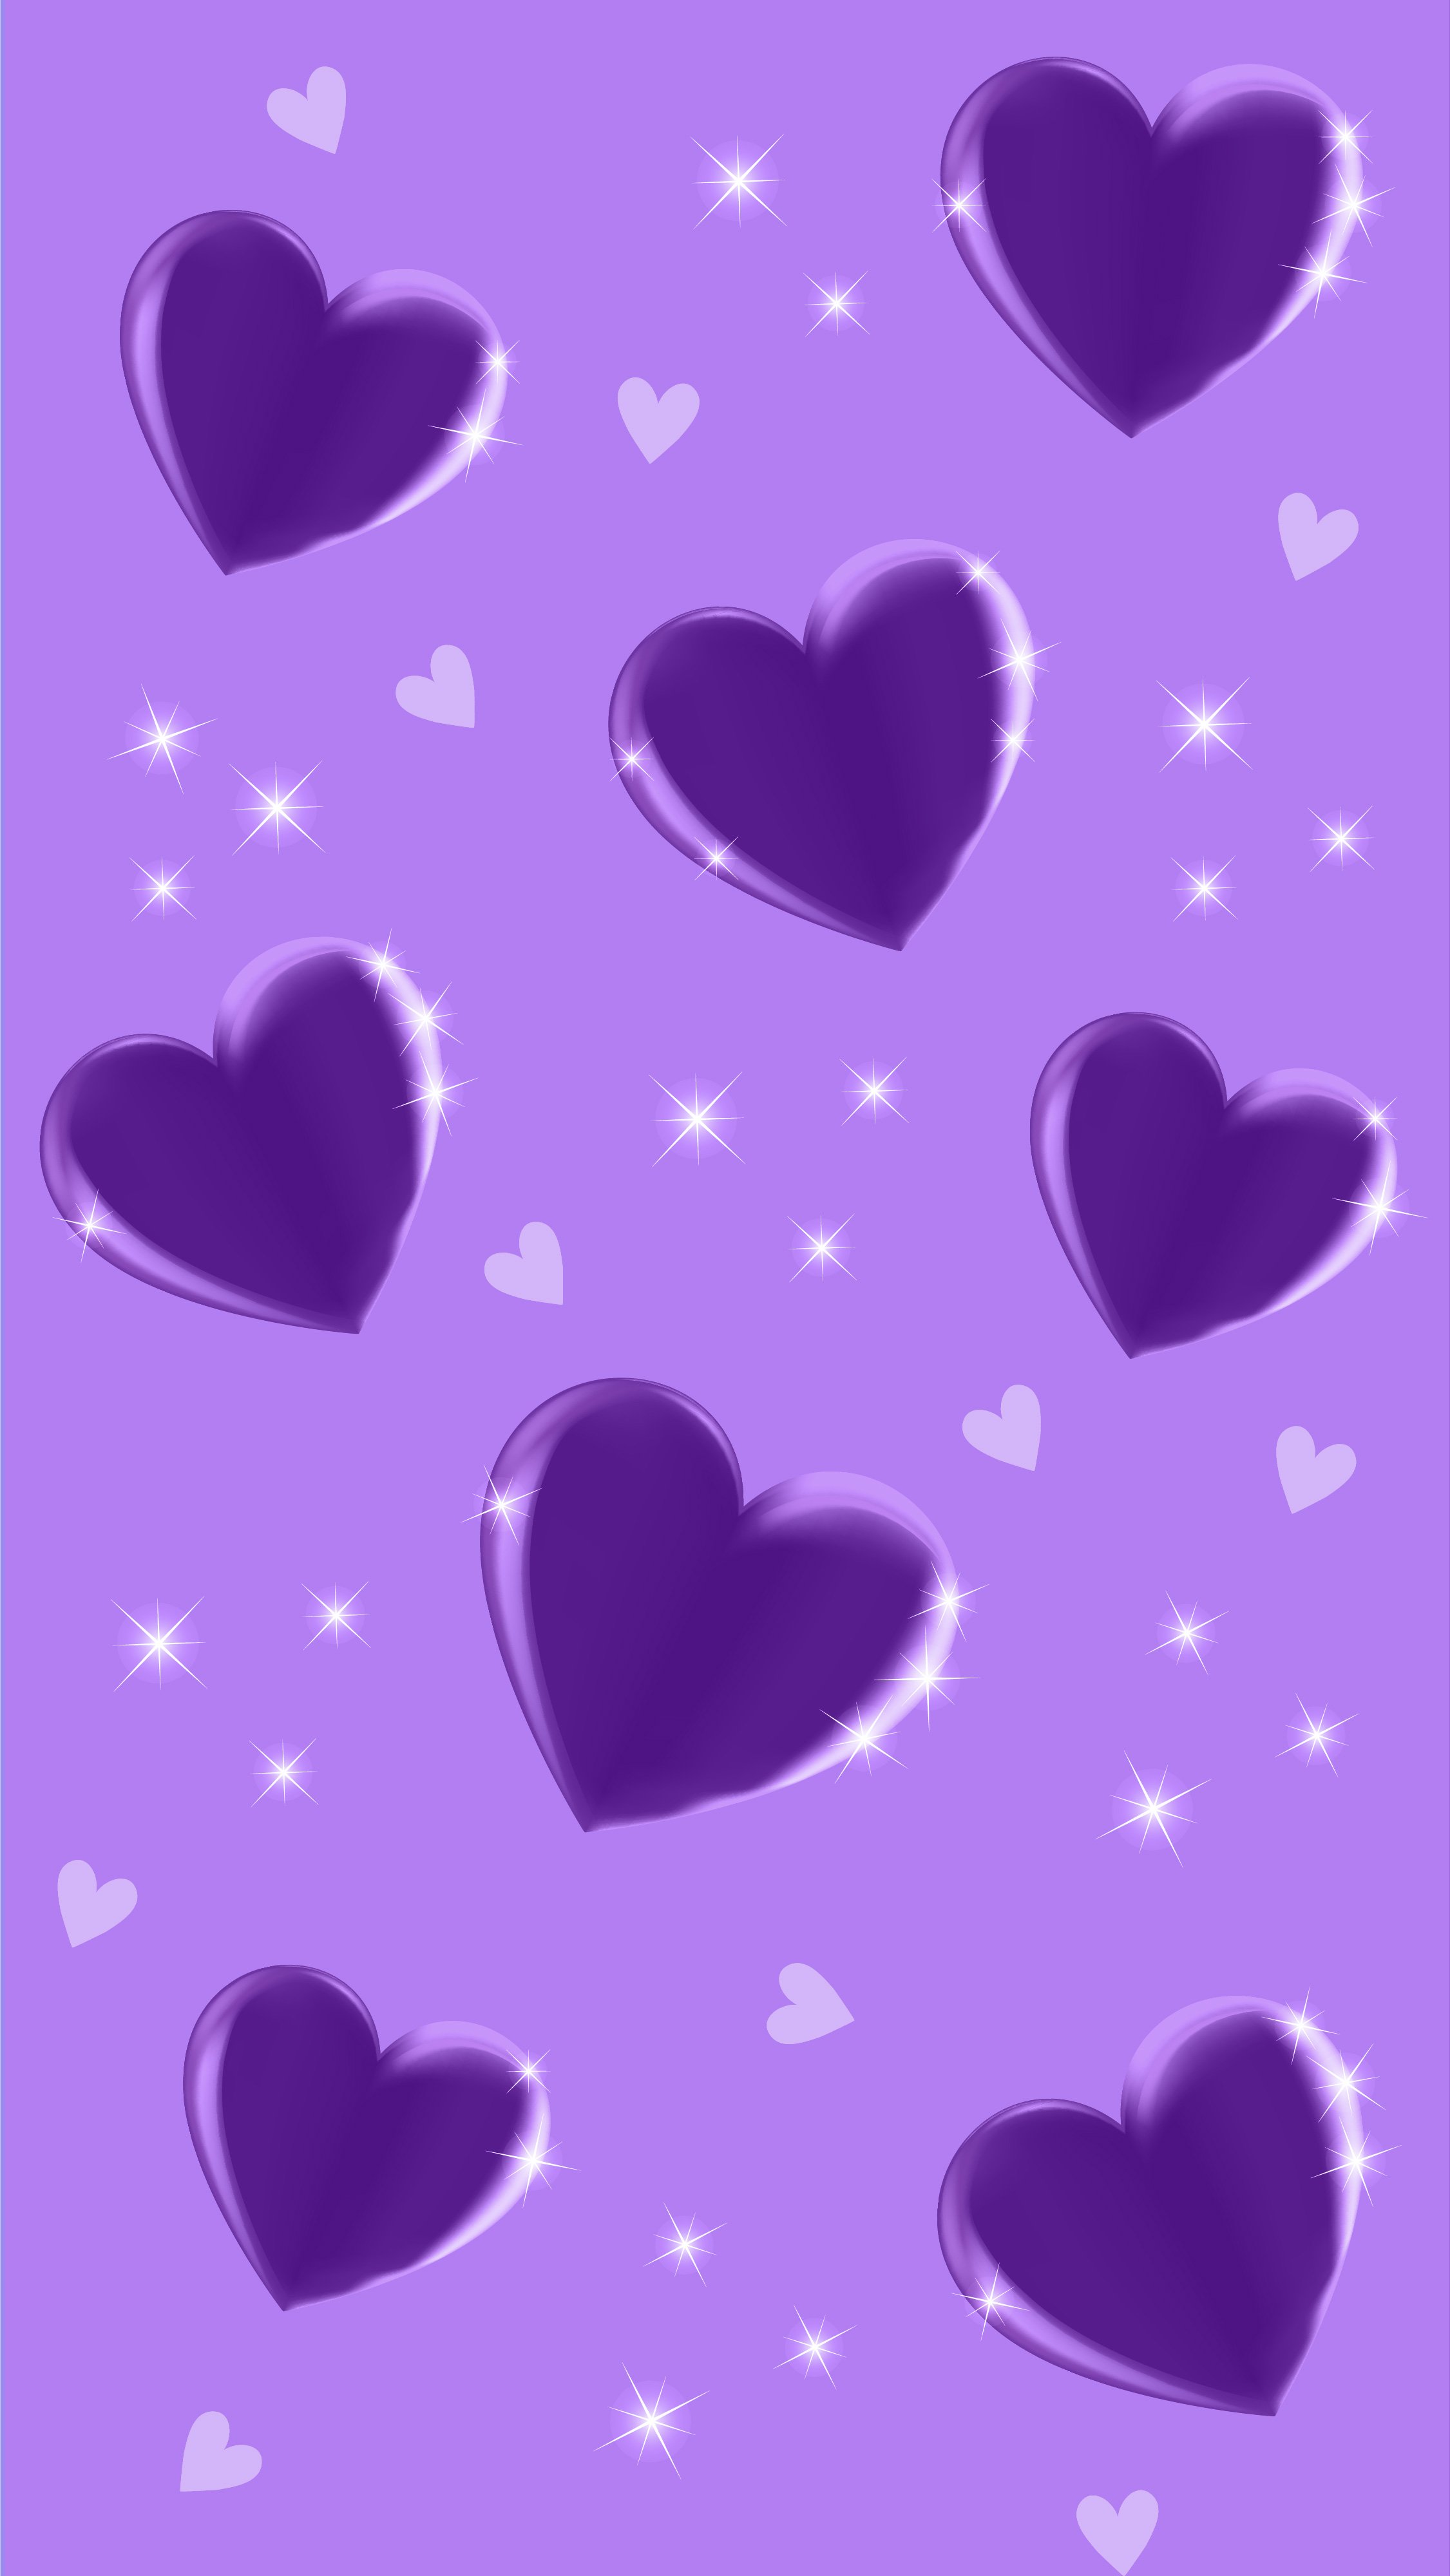 Free Vintage Purple Floral Background - EPS, Illustrator, JPG, SVG ...